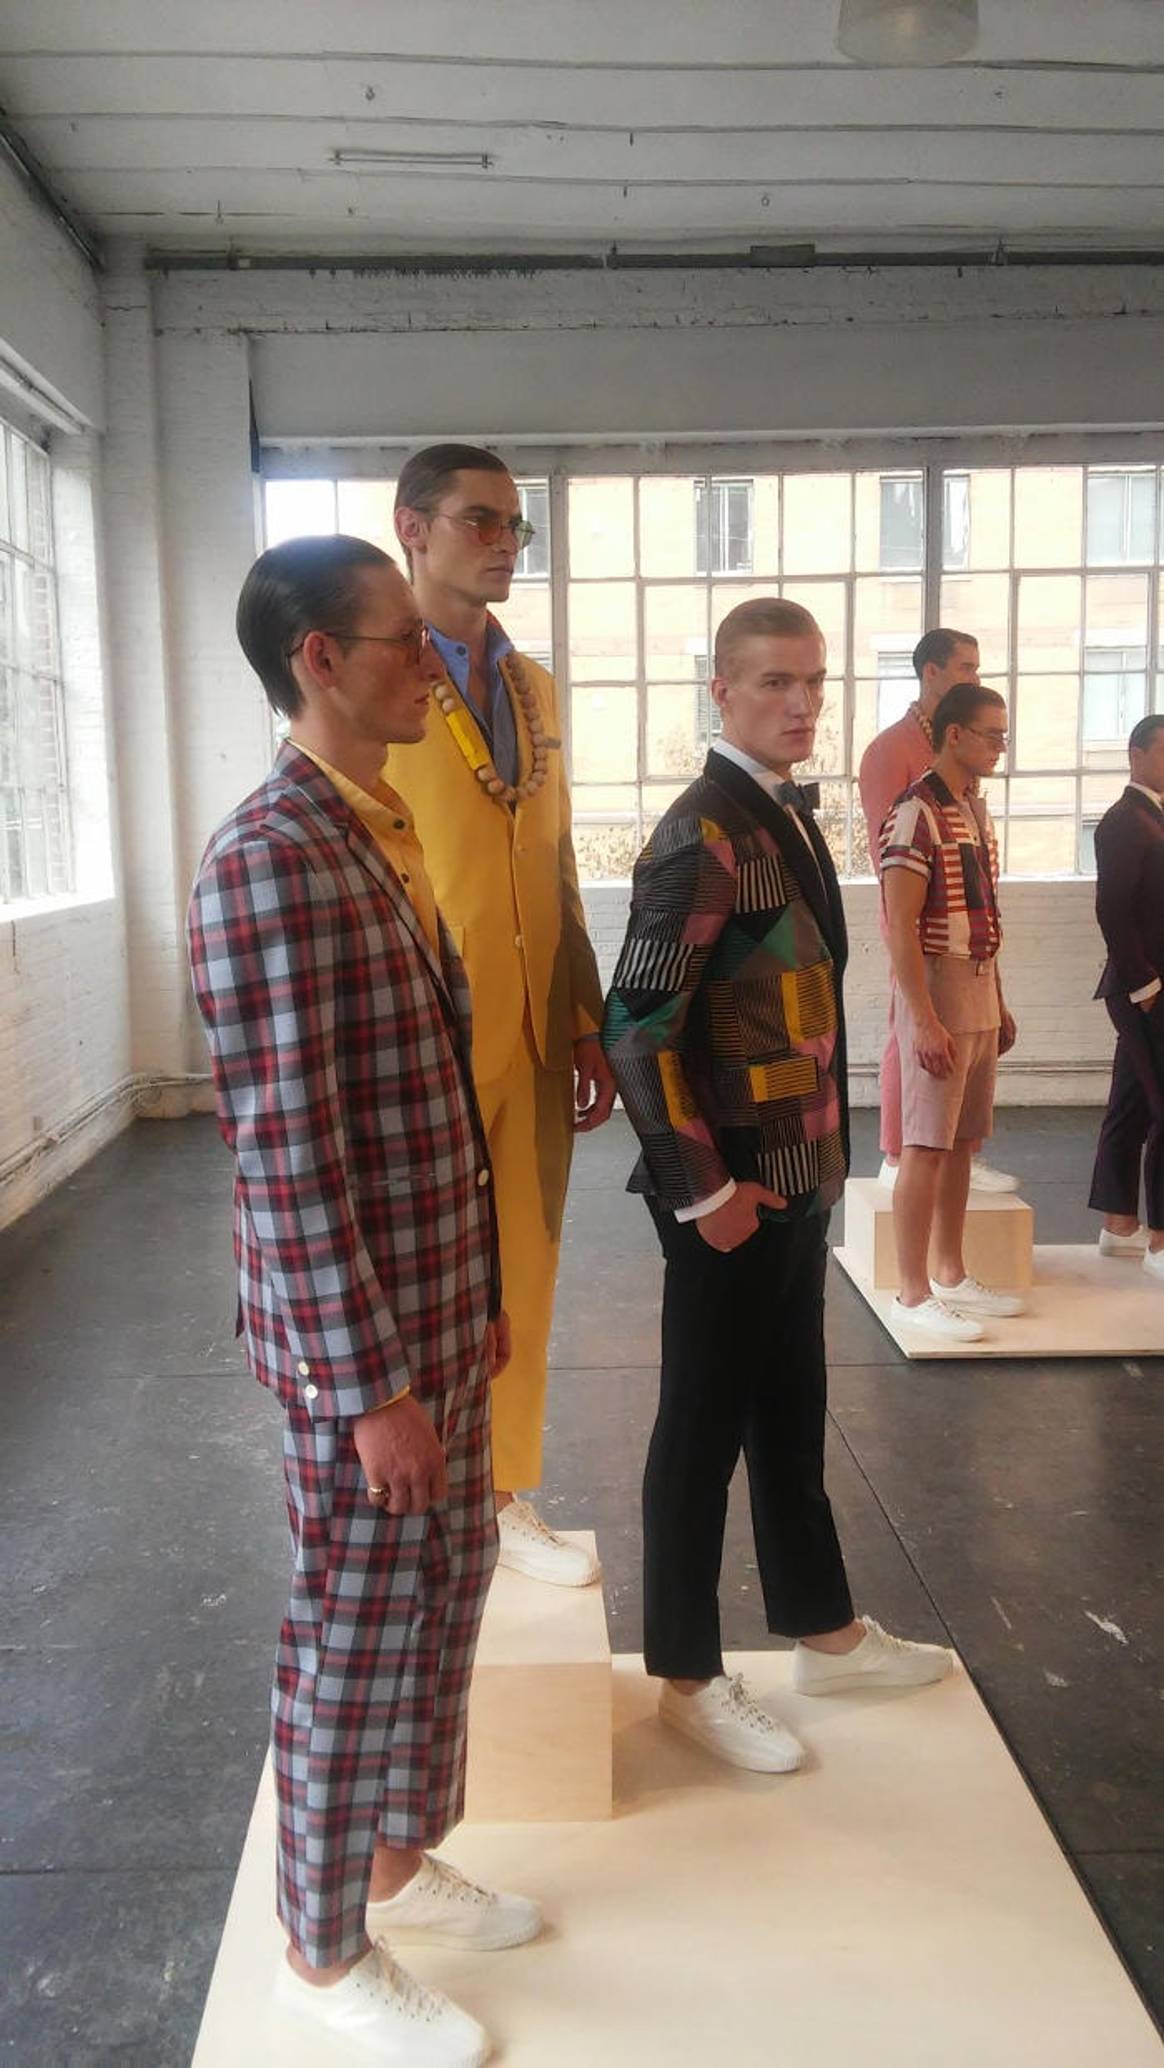 NYFW: Where men's fashion is heading